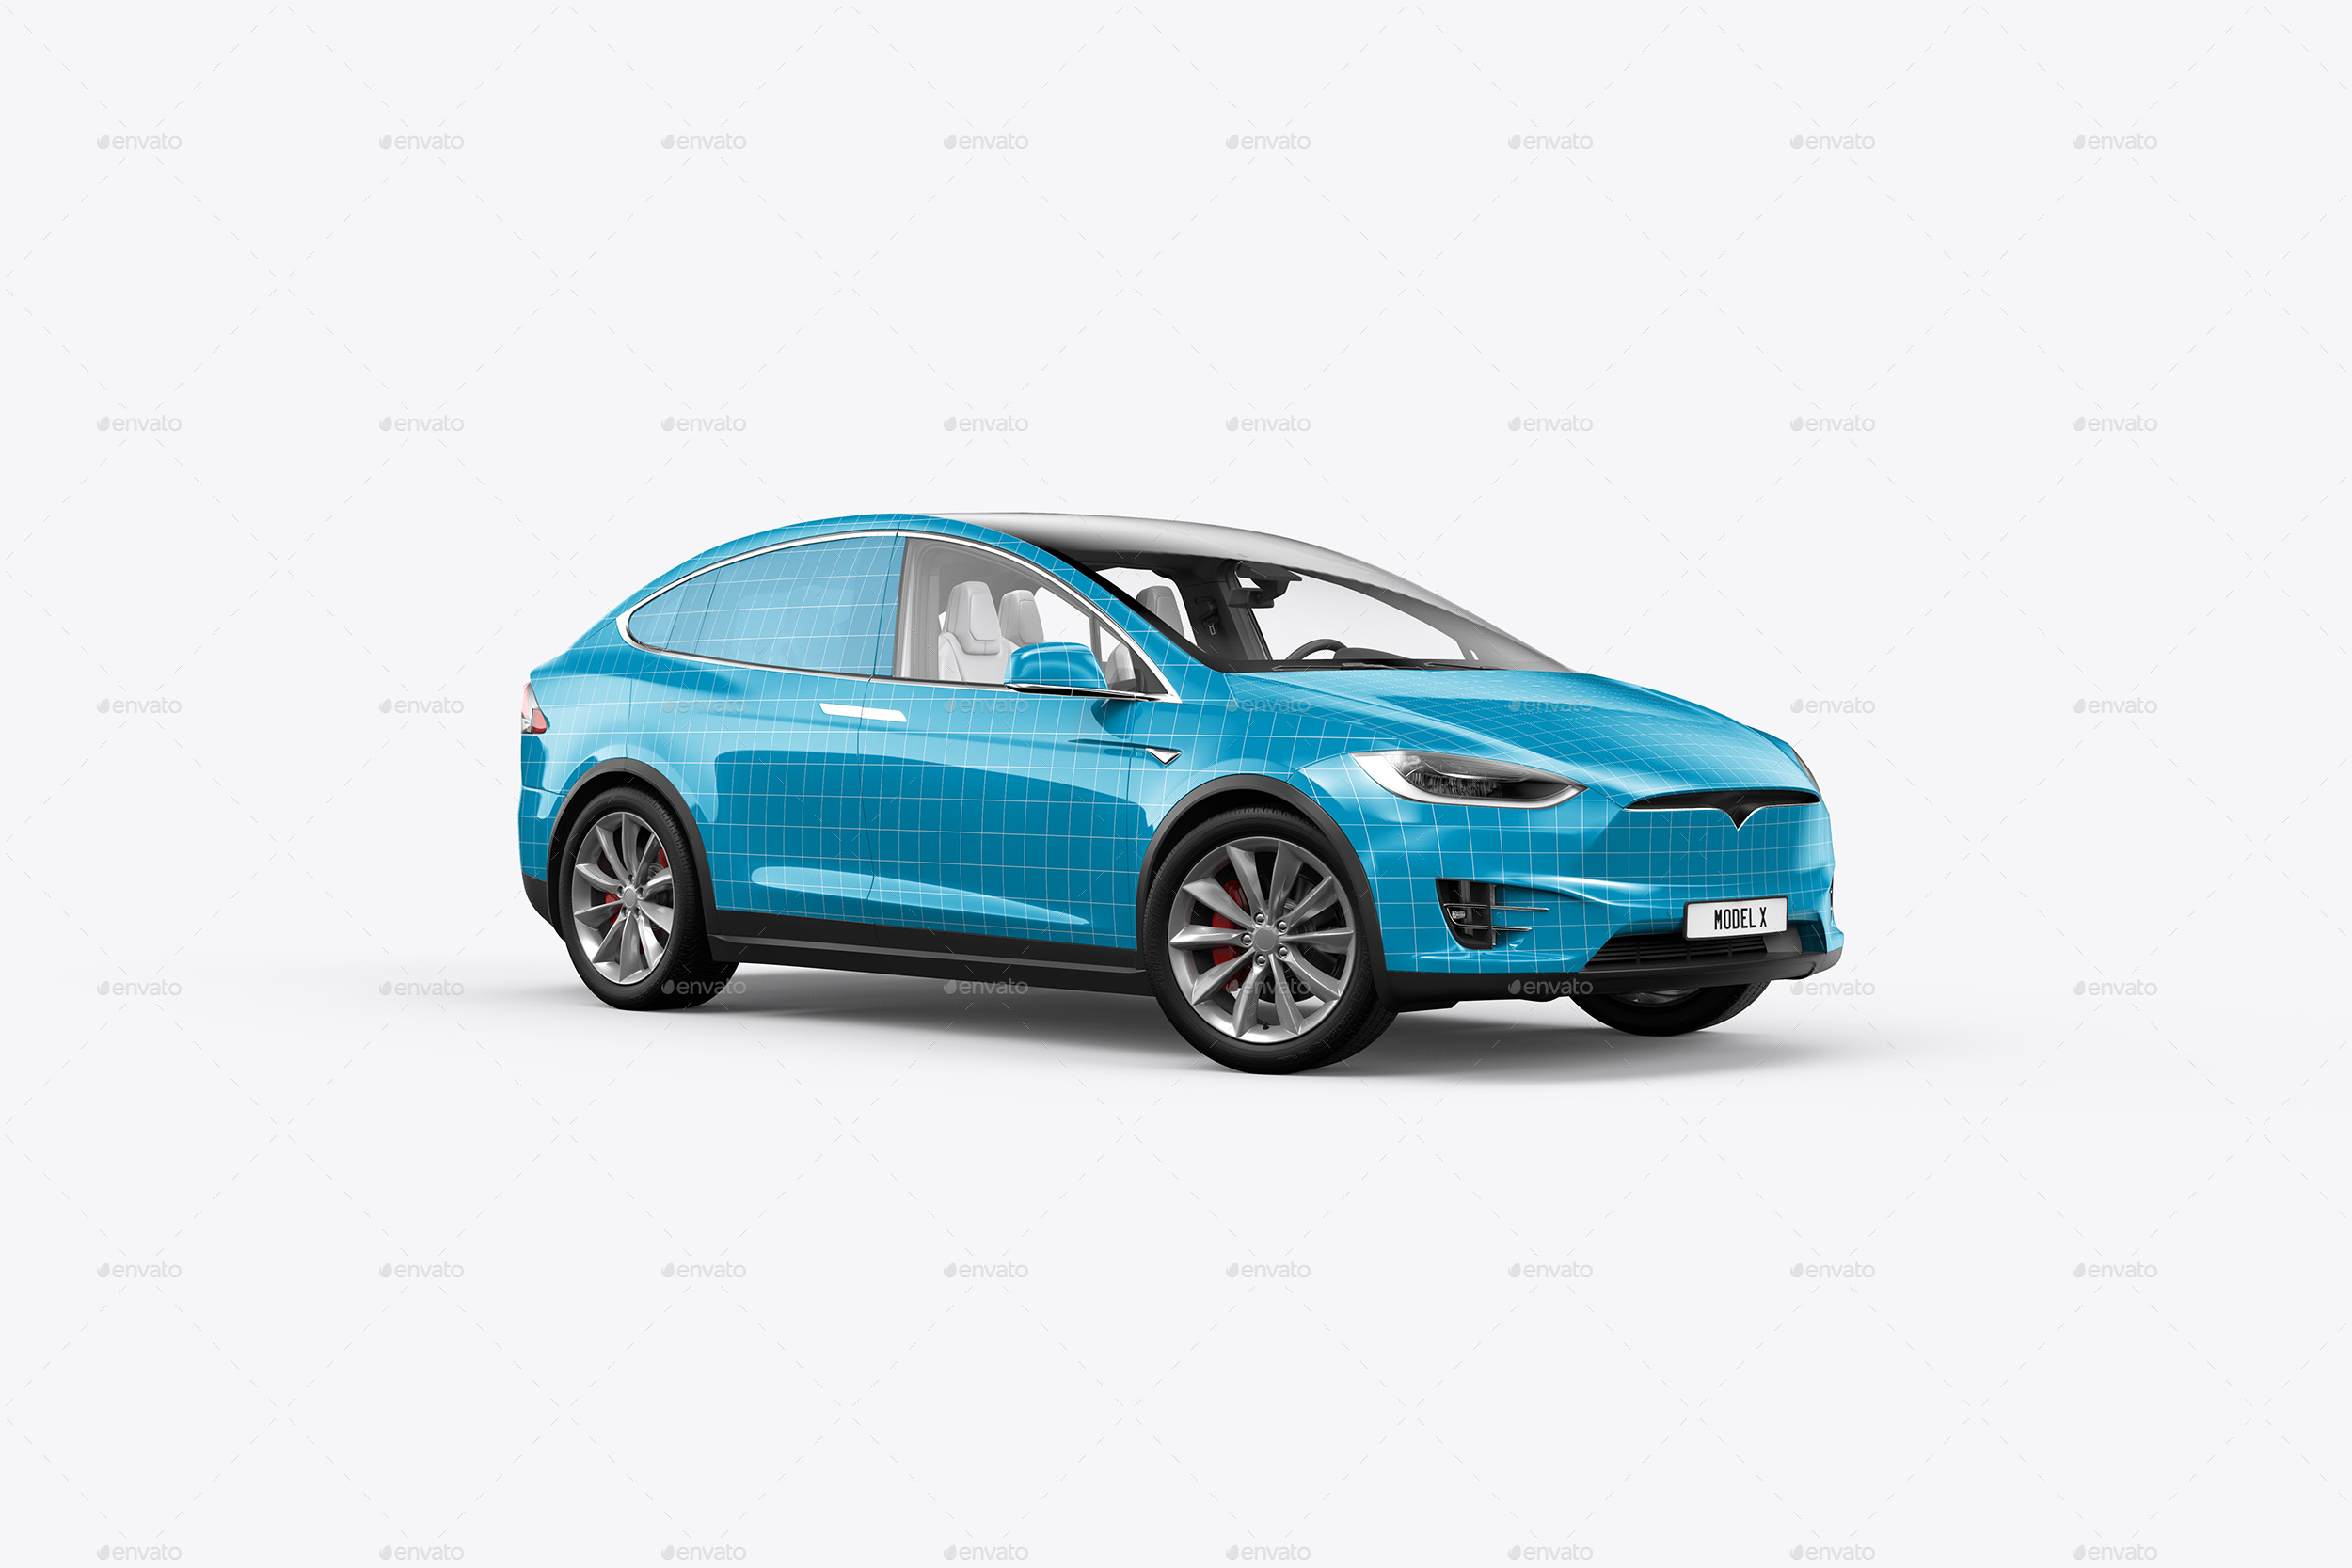 特斯拉汽车多角度场景展示样机贴图PSD模版 Tesla Mo